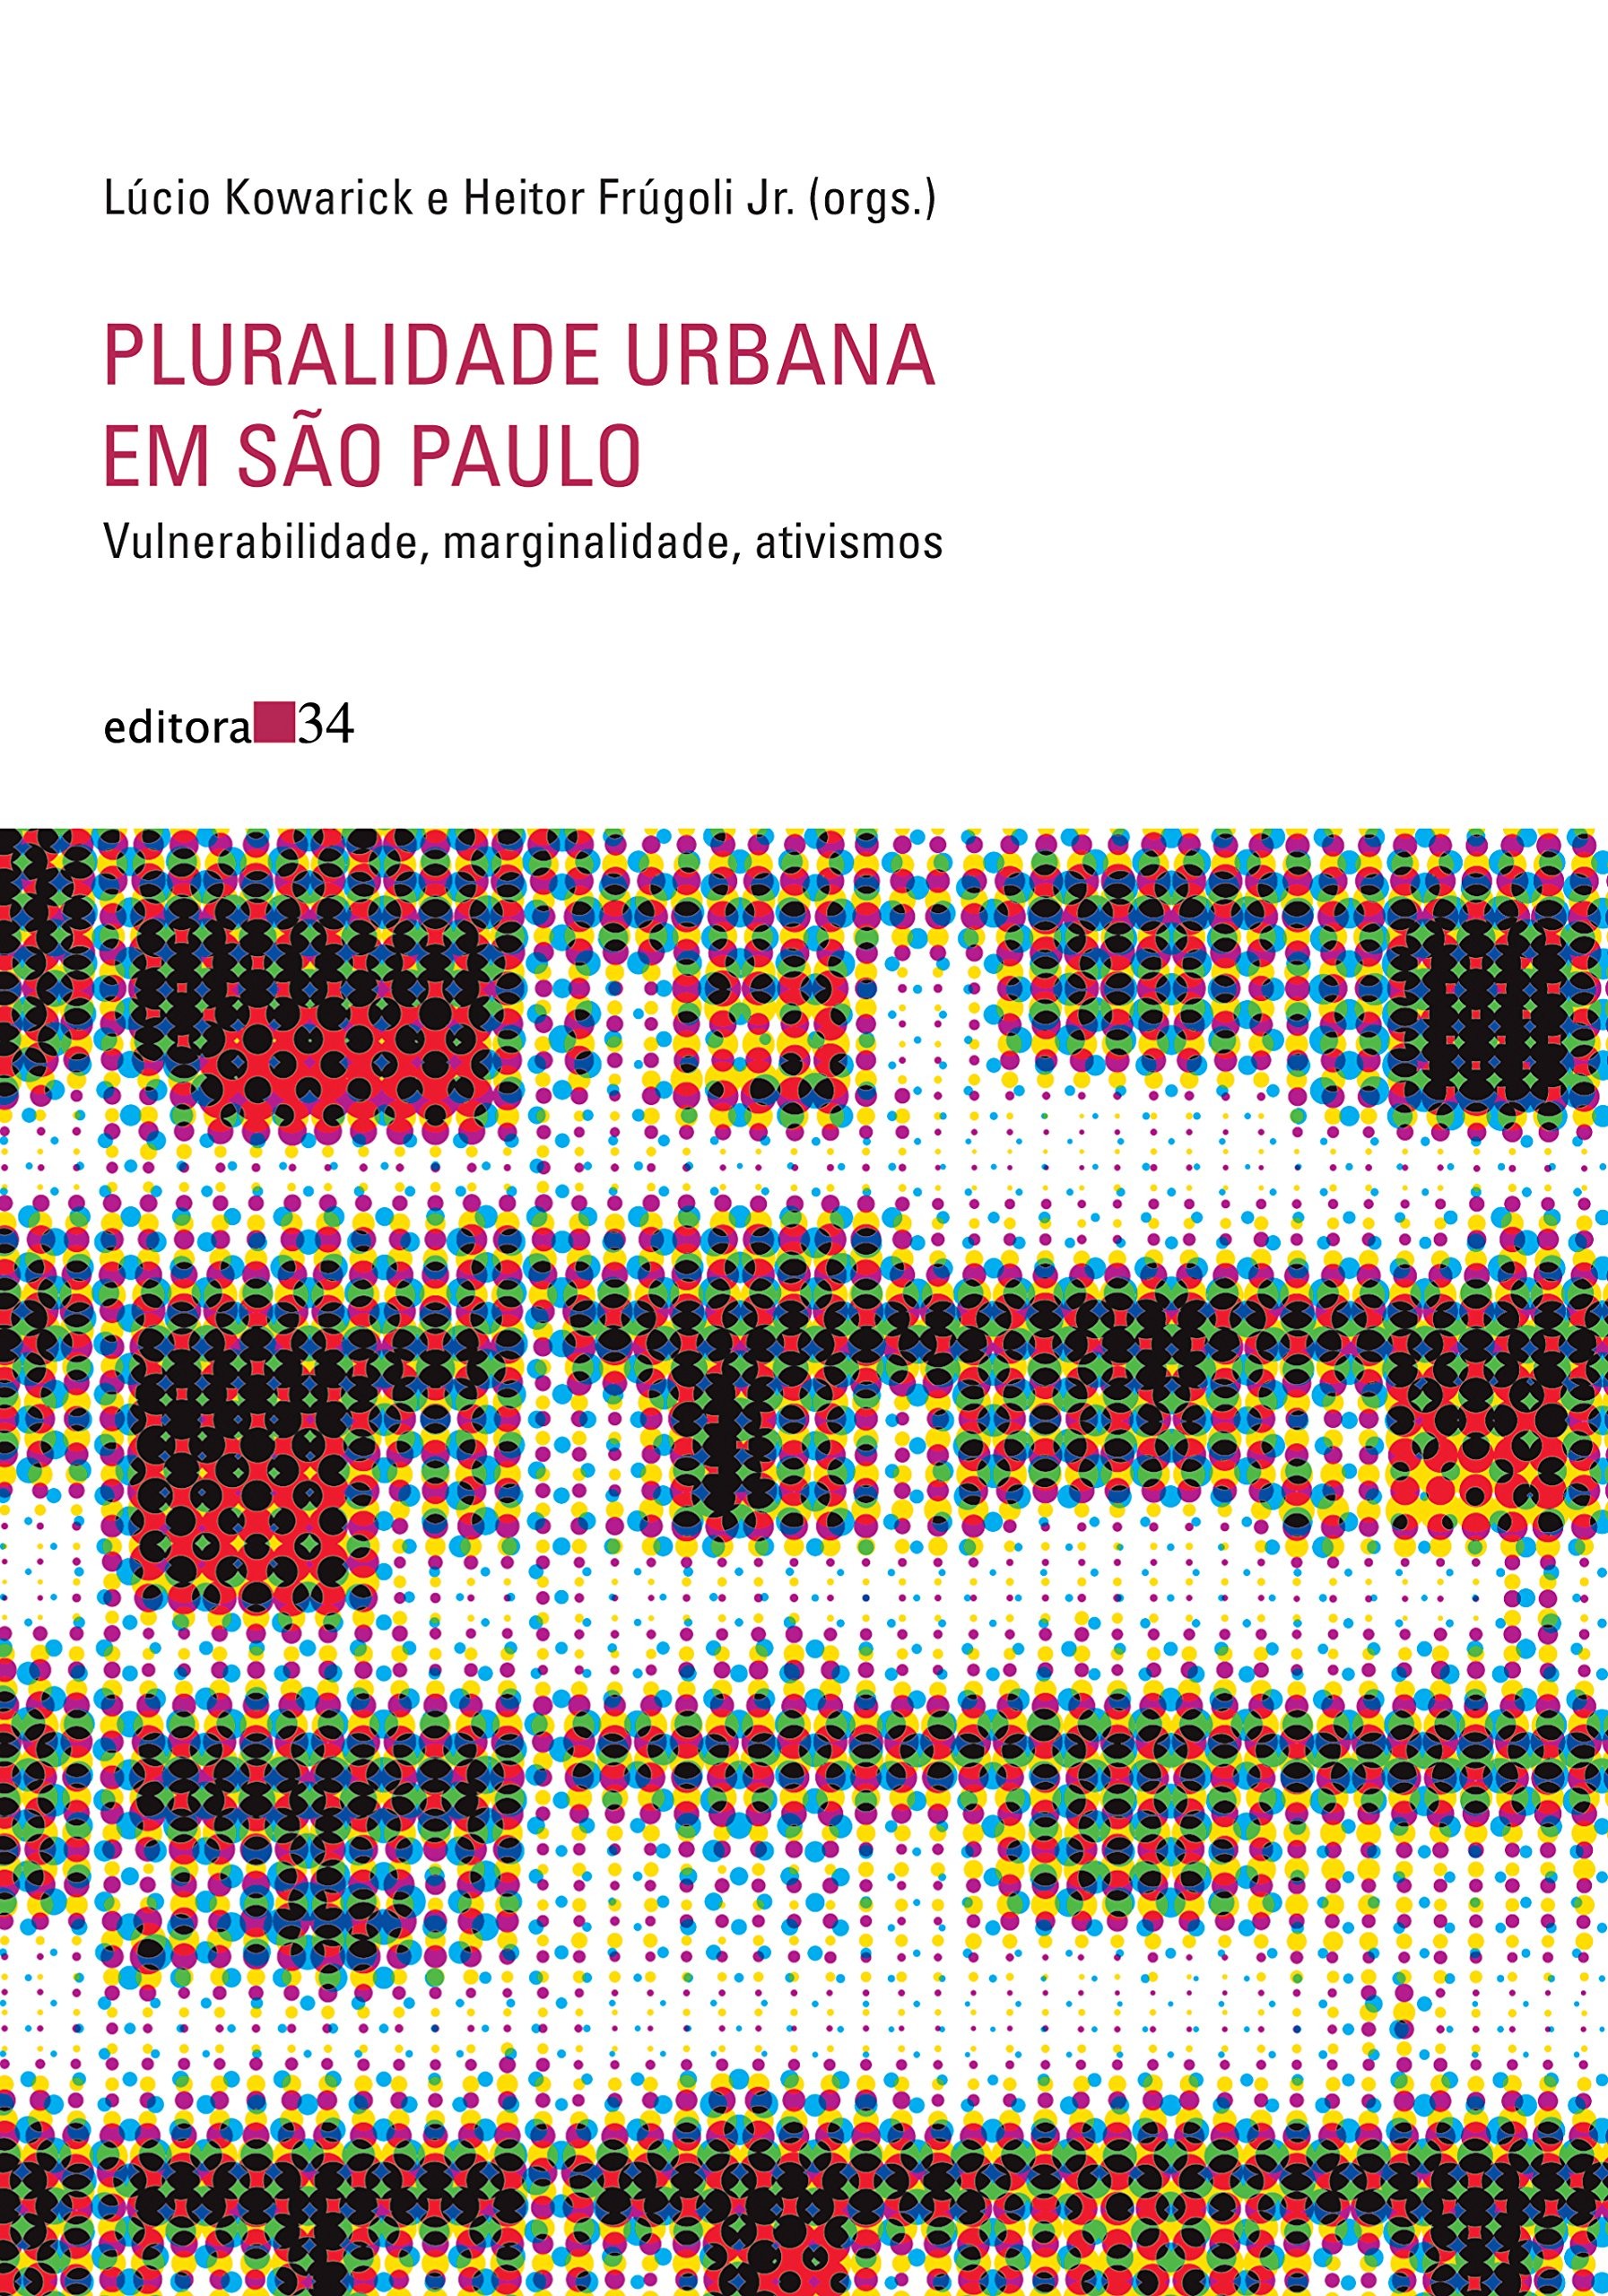 Pluralidade Urbana Em Sao Paulo: Vulnerabilidade, Marginalidade, Ativismos